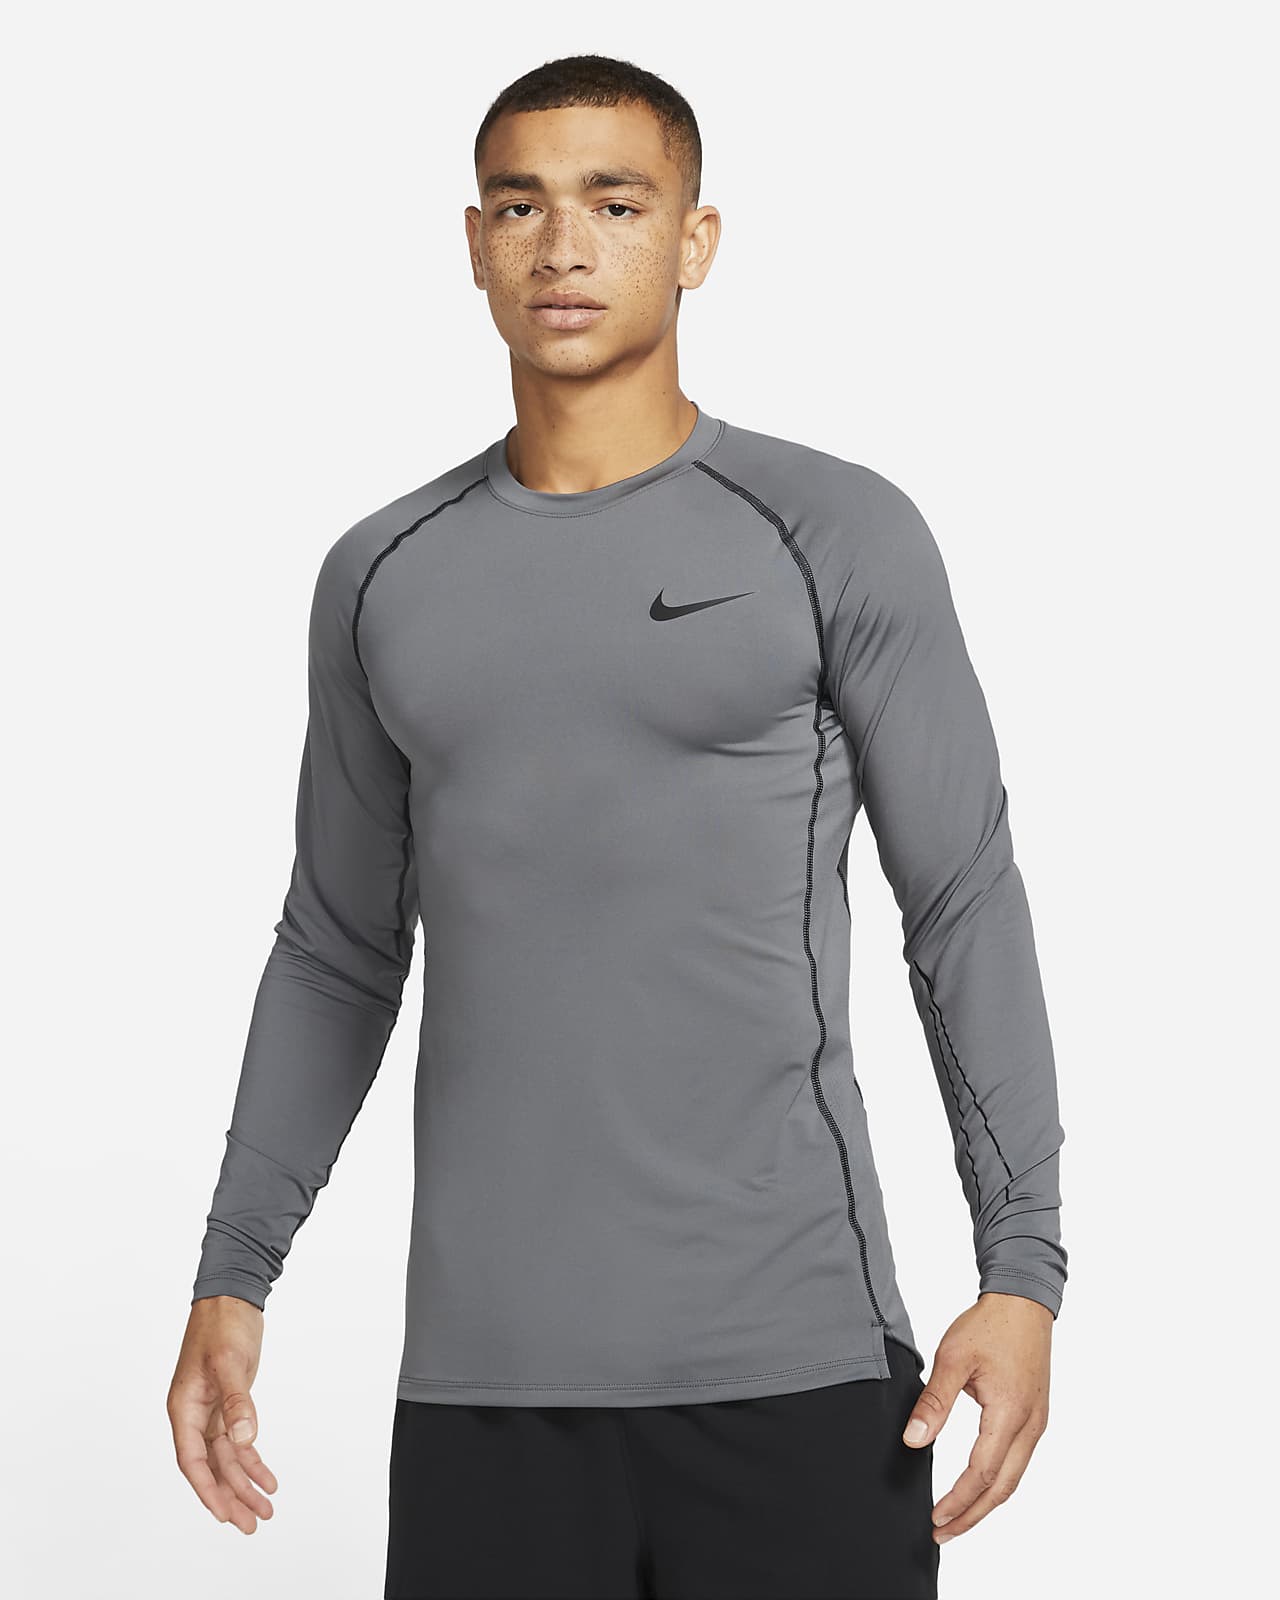 Nogen som helst fange terning Nike Pro Dri-FIT Men's Slim Fit Long-Sleeve Top. Nike.com